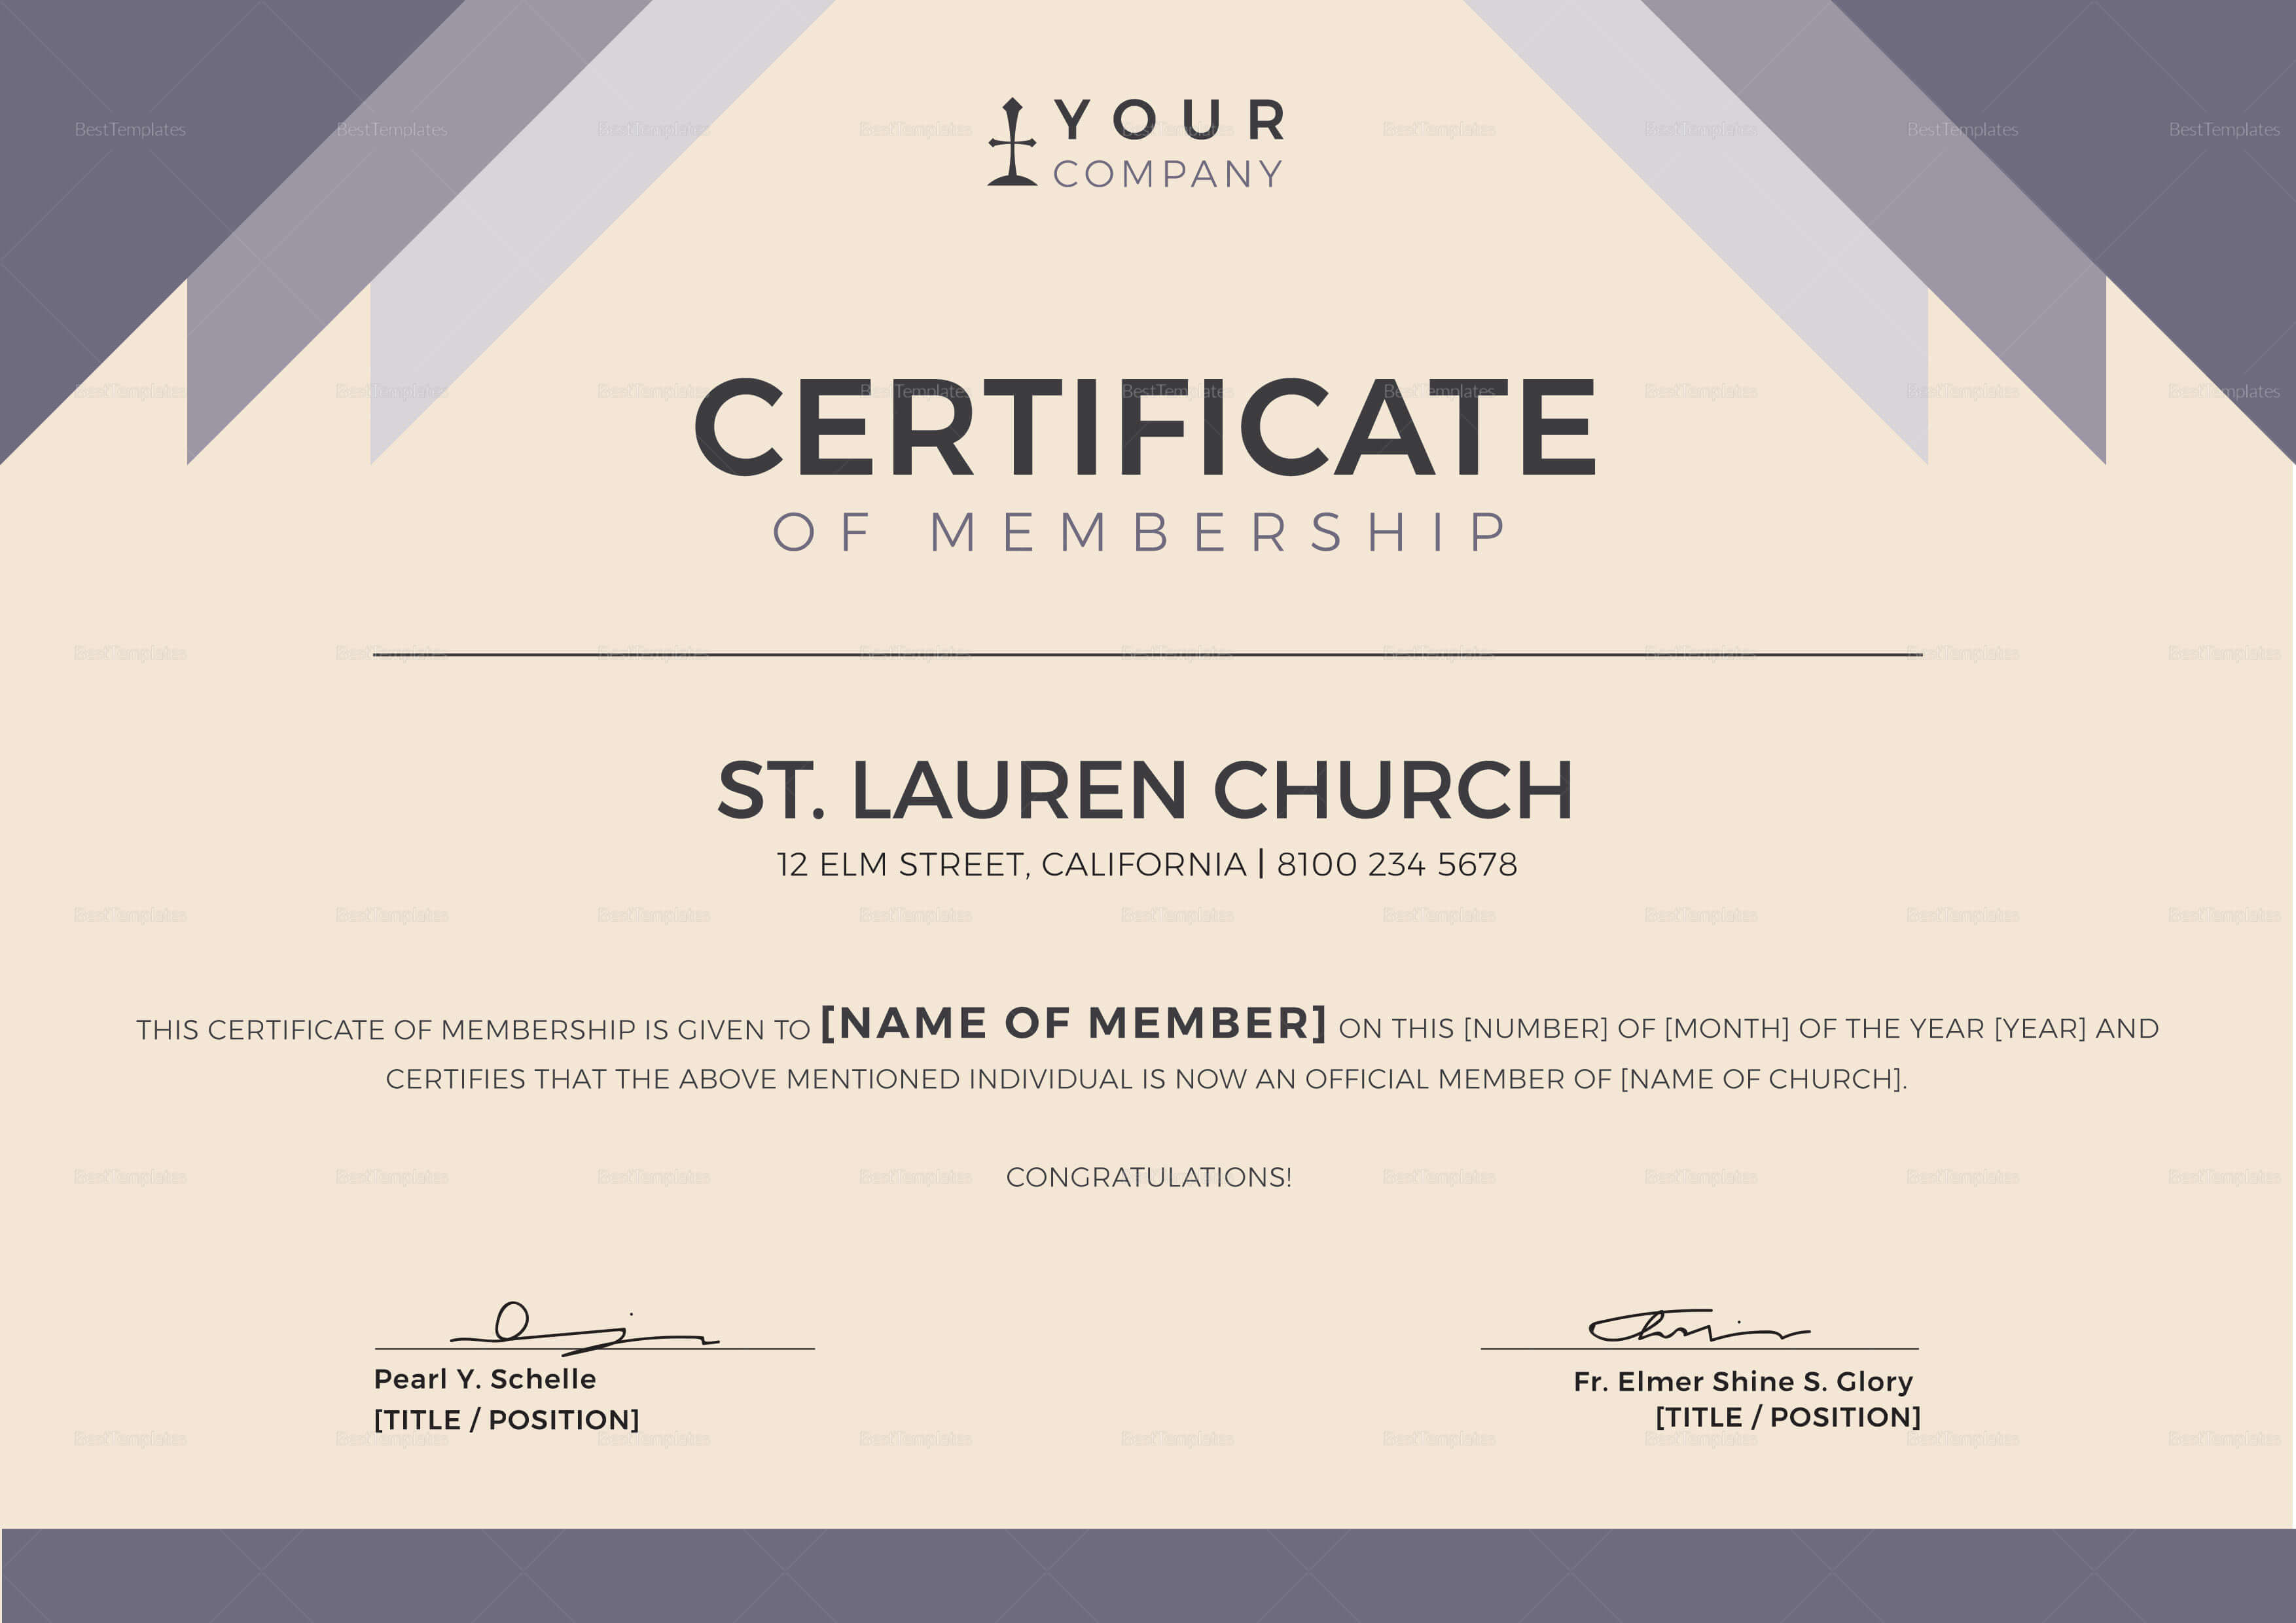 Certificate Templates: Membership Certificate Template Word With New Member Certificate Template